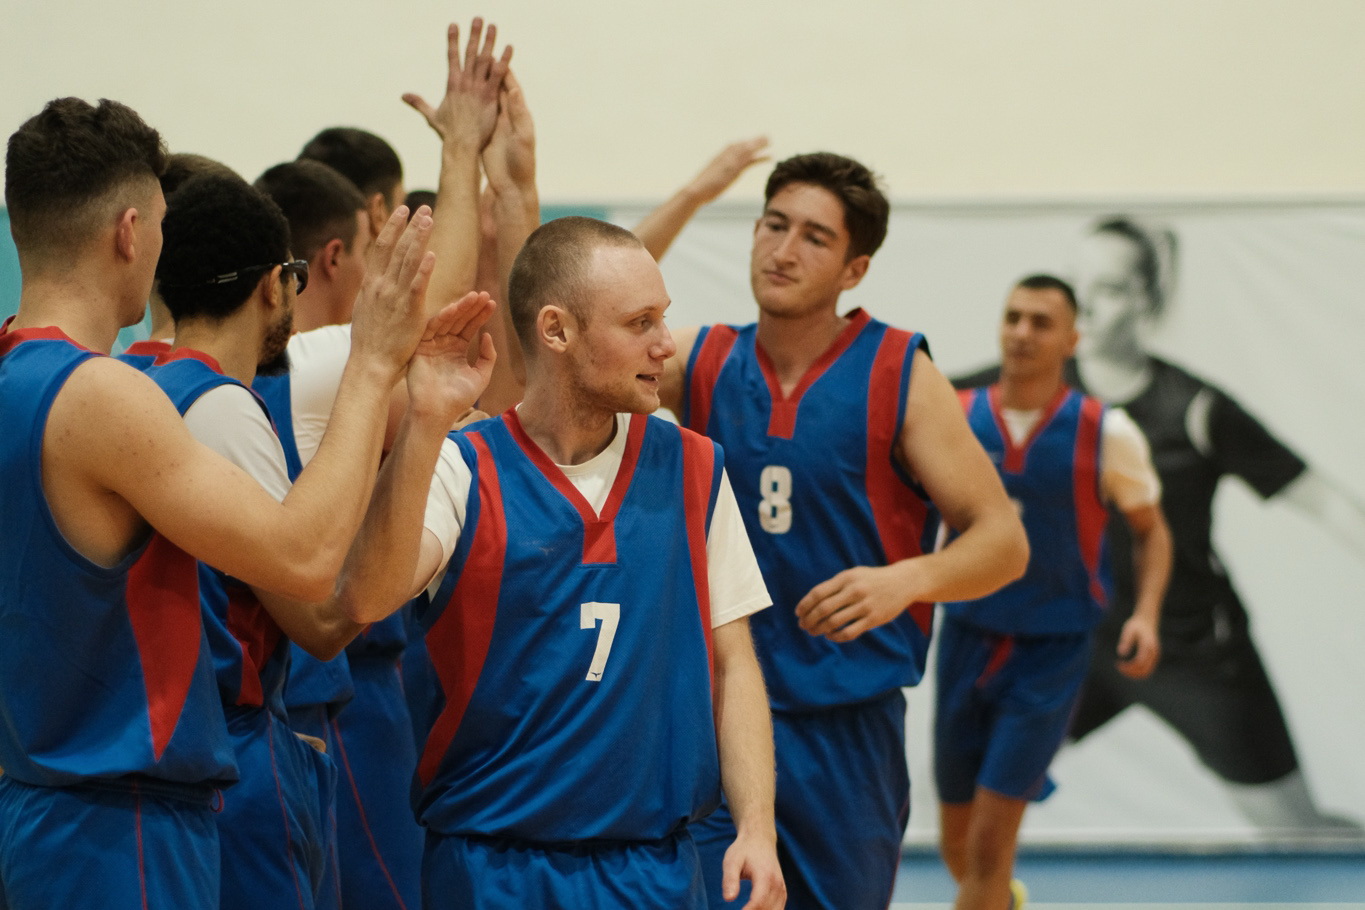 Неплохой старт для новичков чемпионата: баскетболисты из Комрата добились новой победы